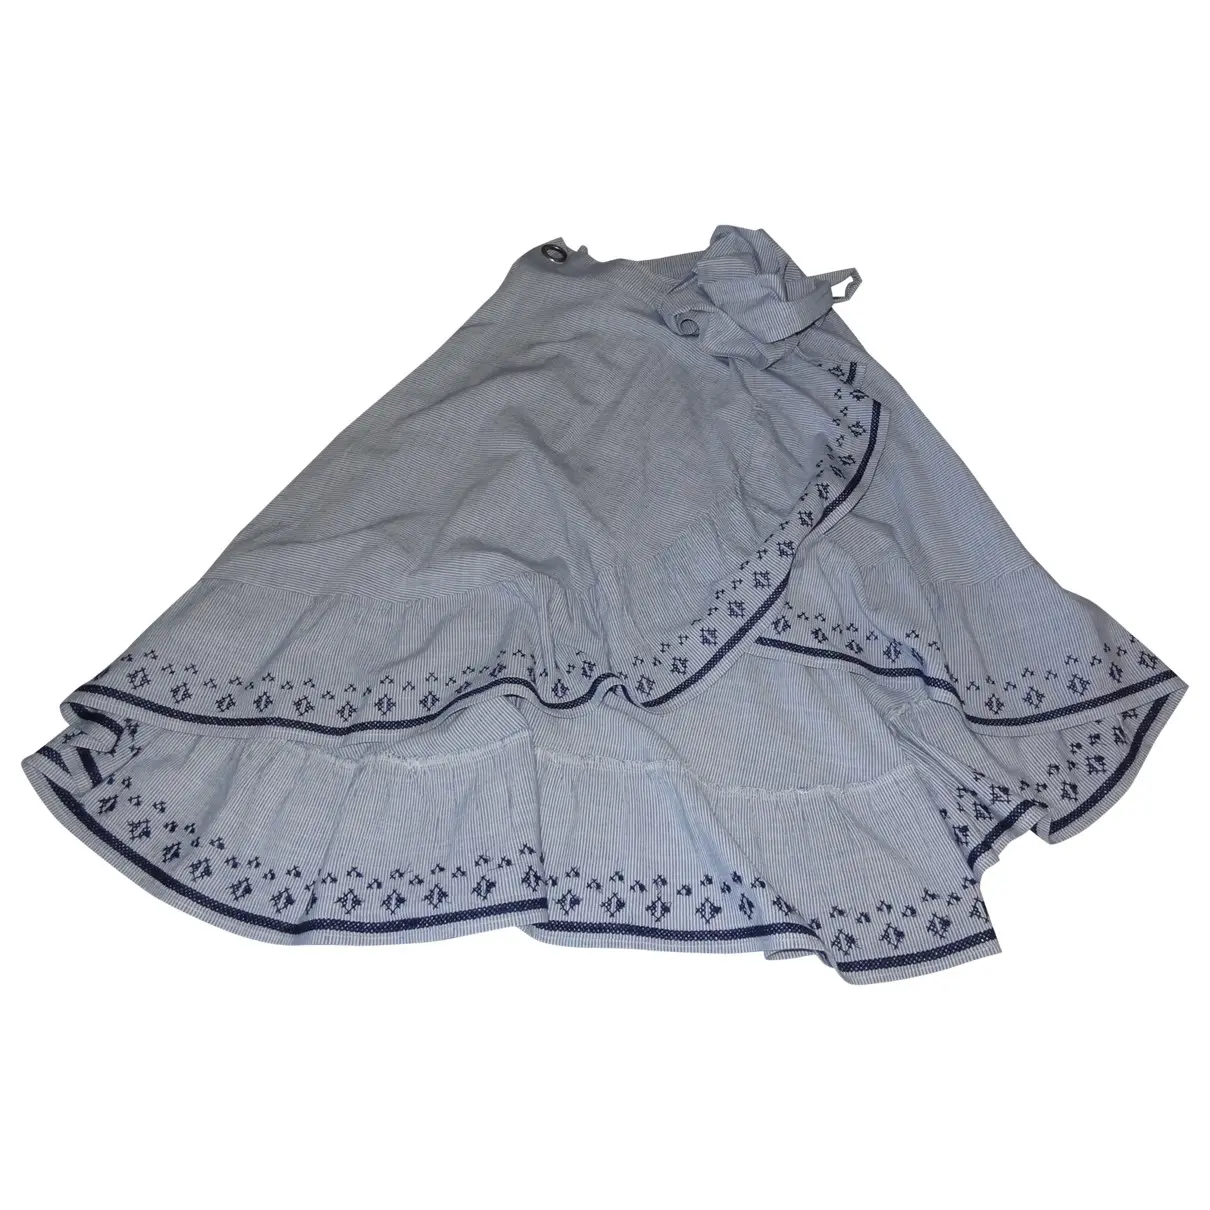 Mid-length skirt Suncoo